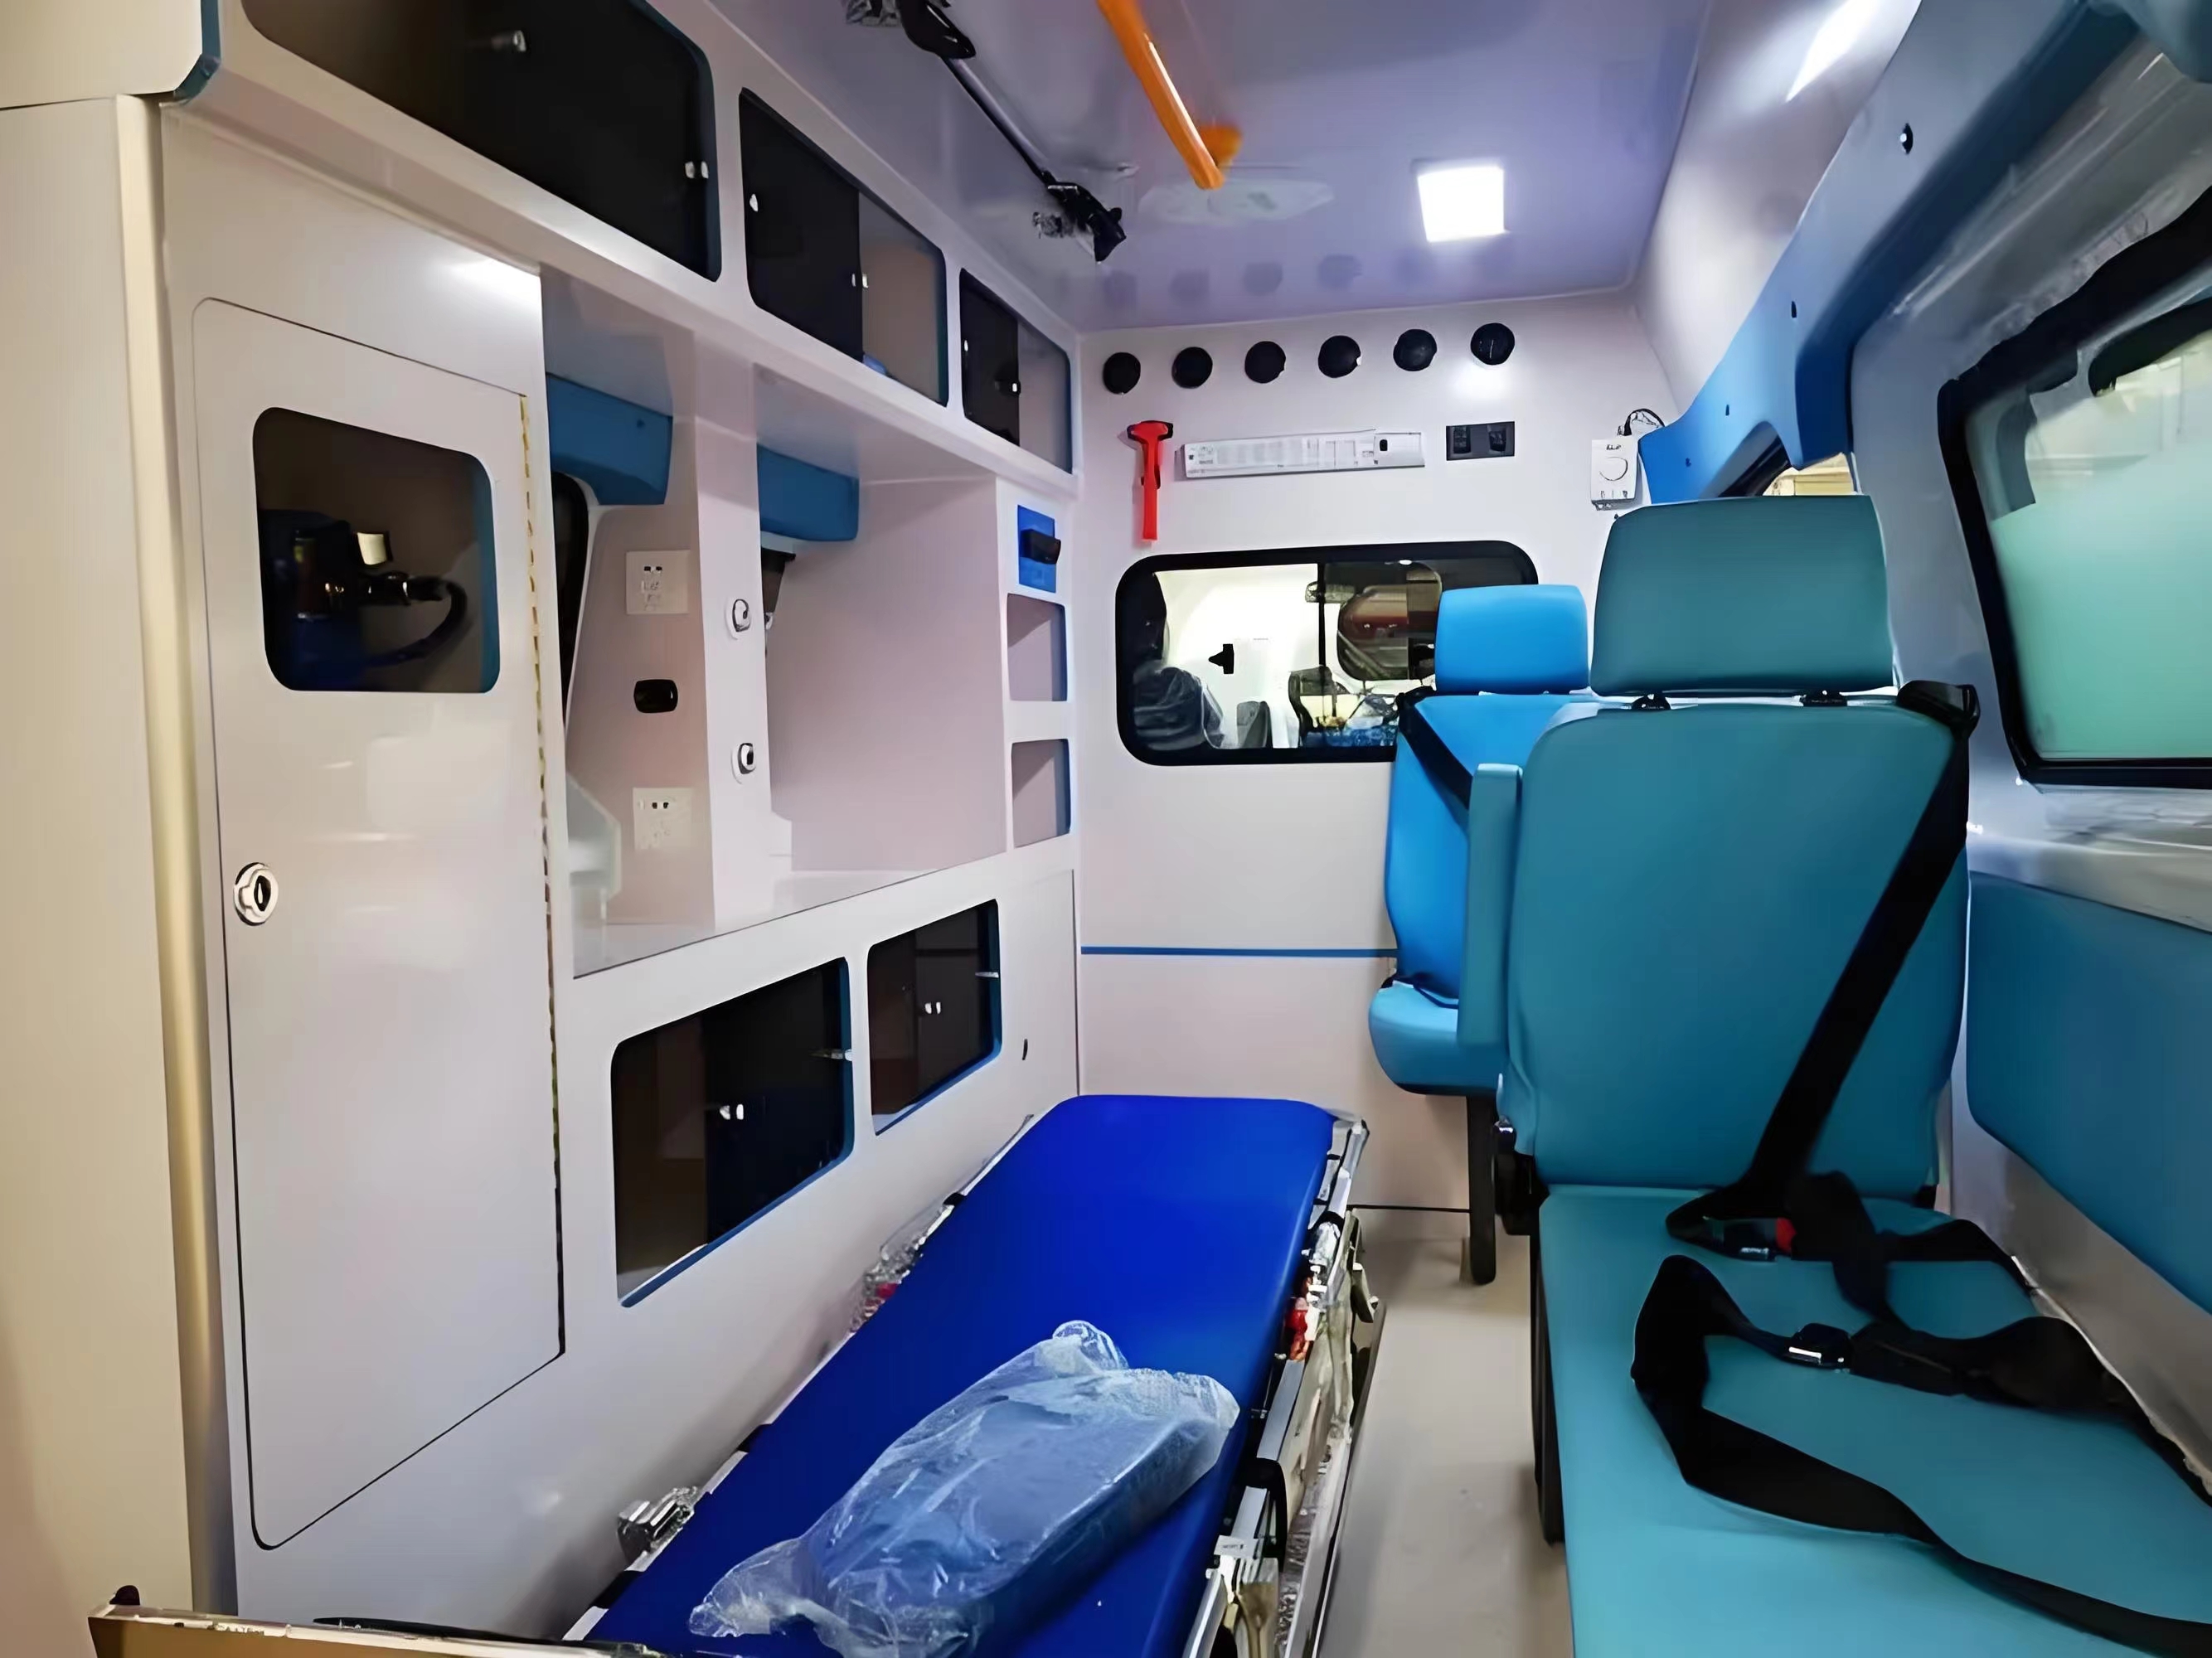 达州跨省救护车租赁-救护车出租-24小时服务热线